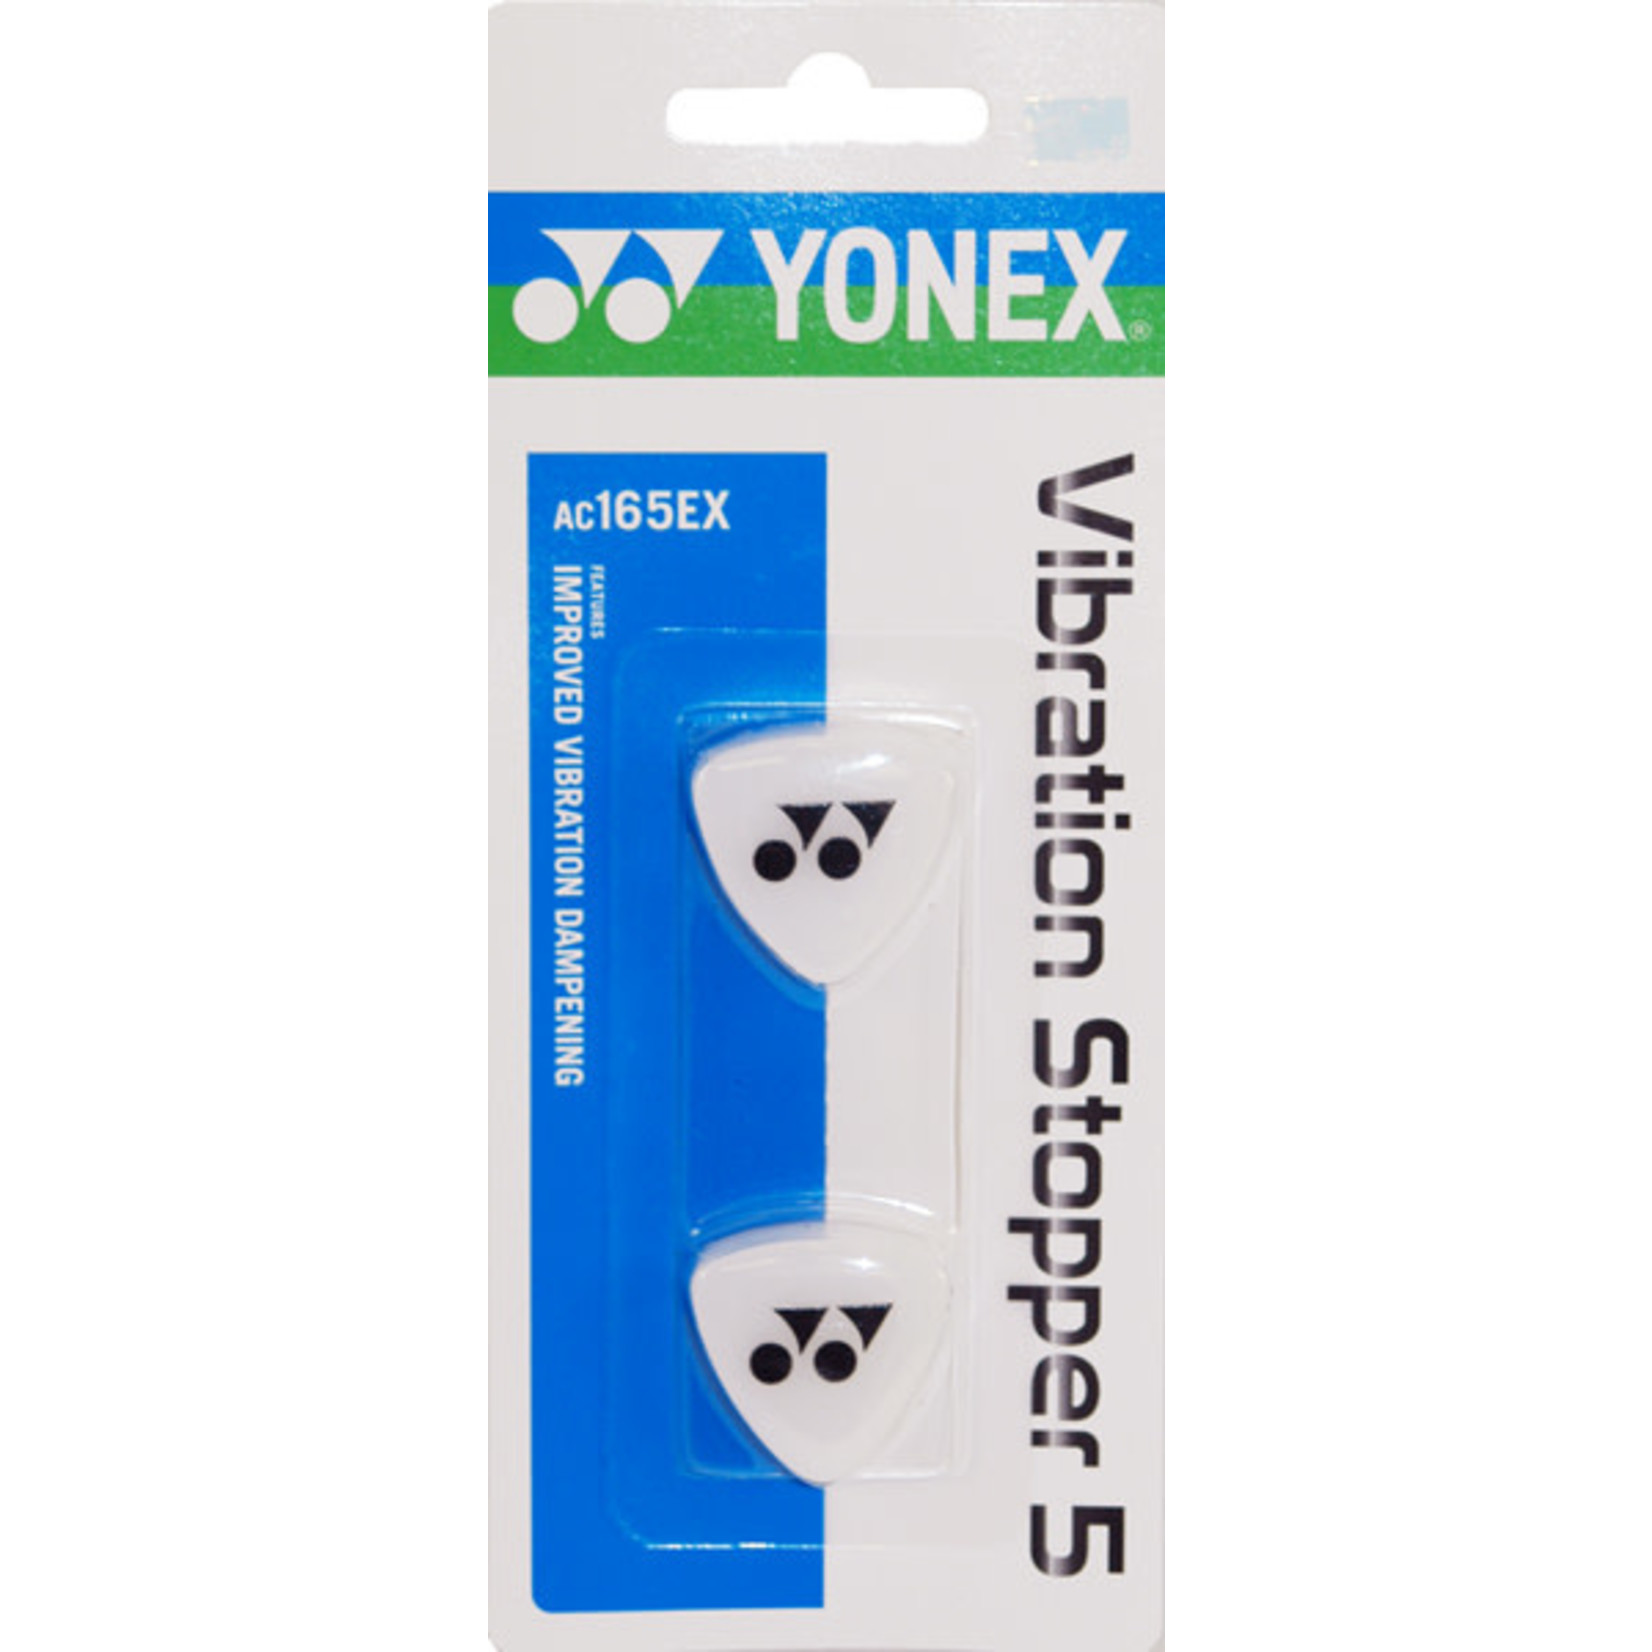 Yonex Yonex Vibration Stoppers (2 Pack)